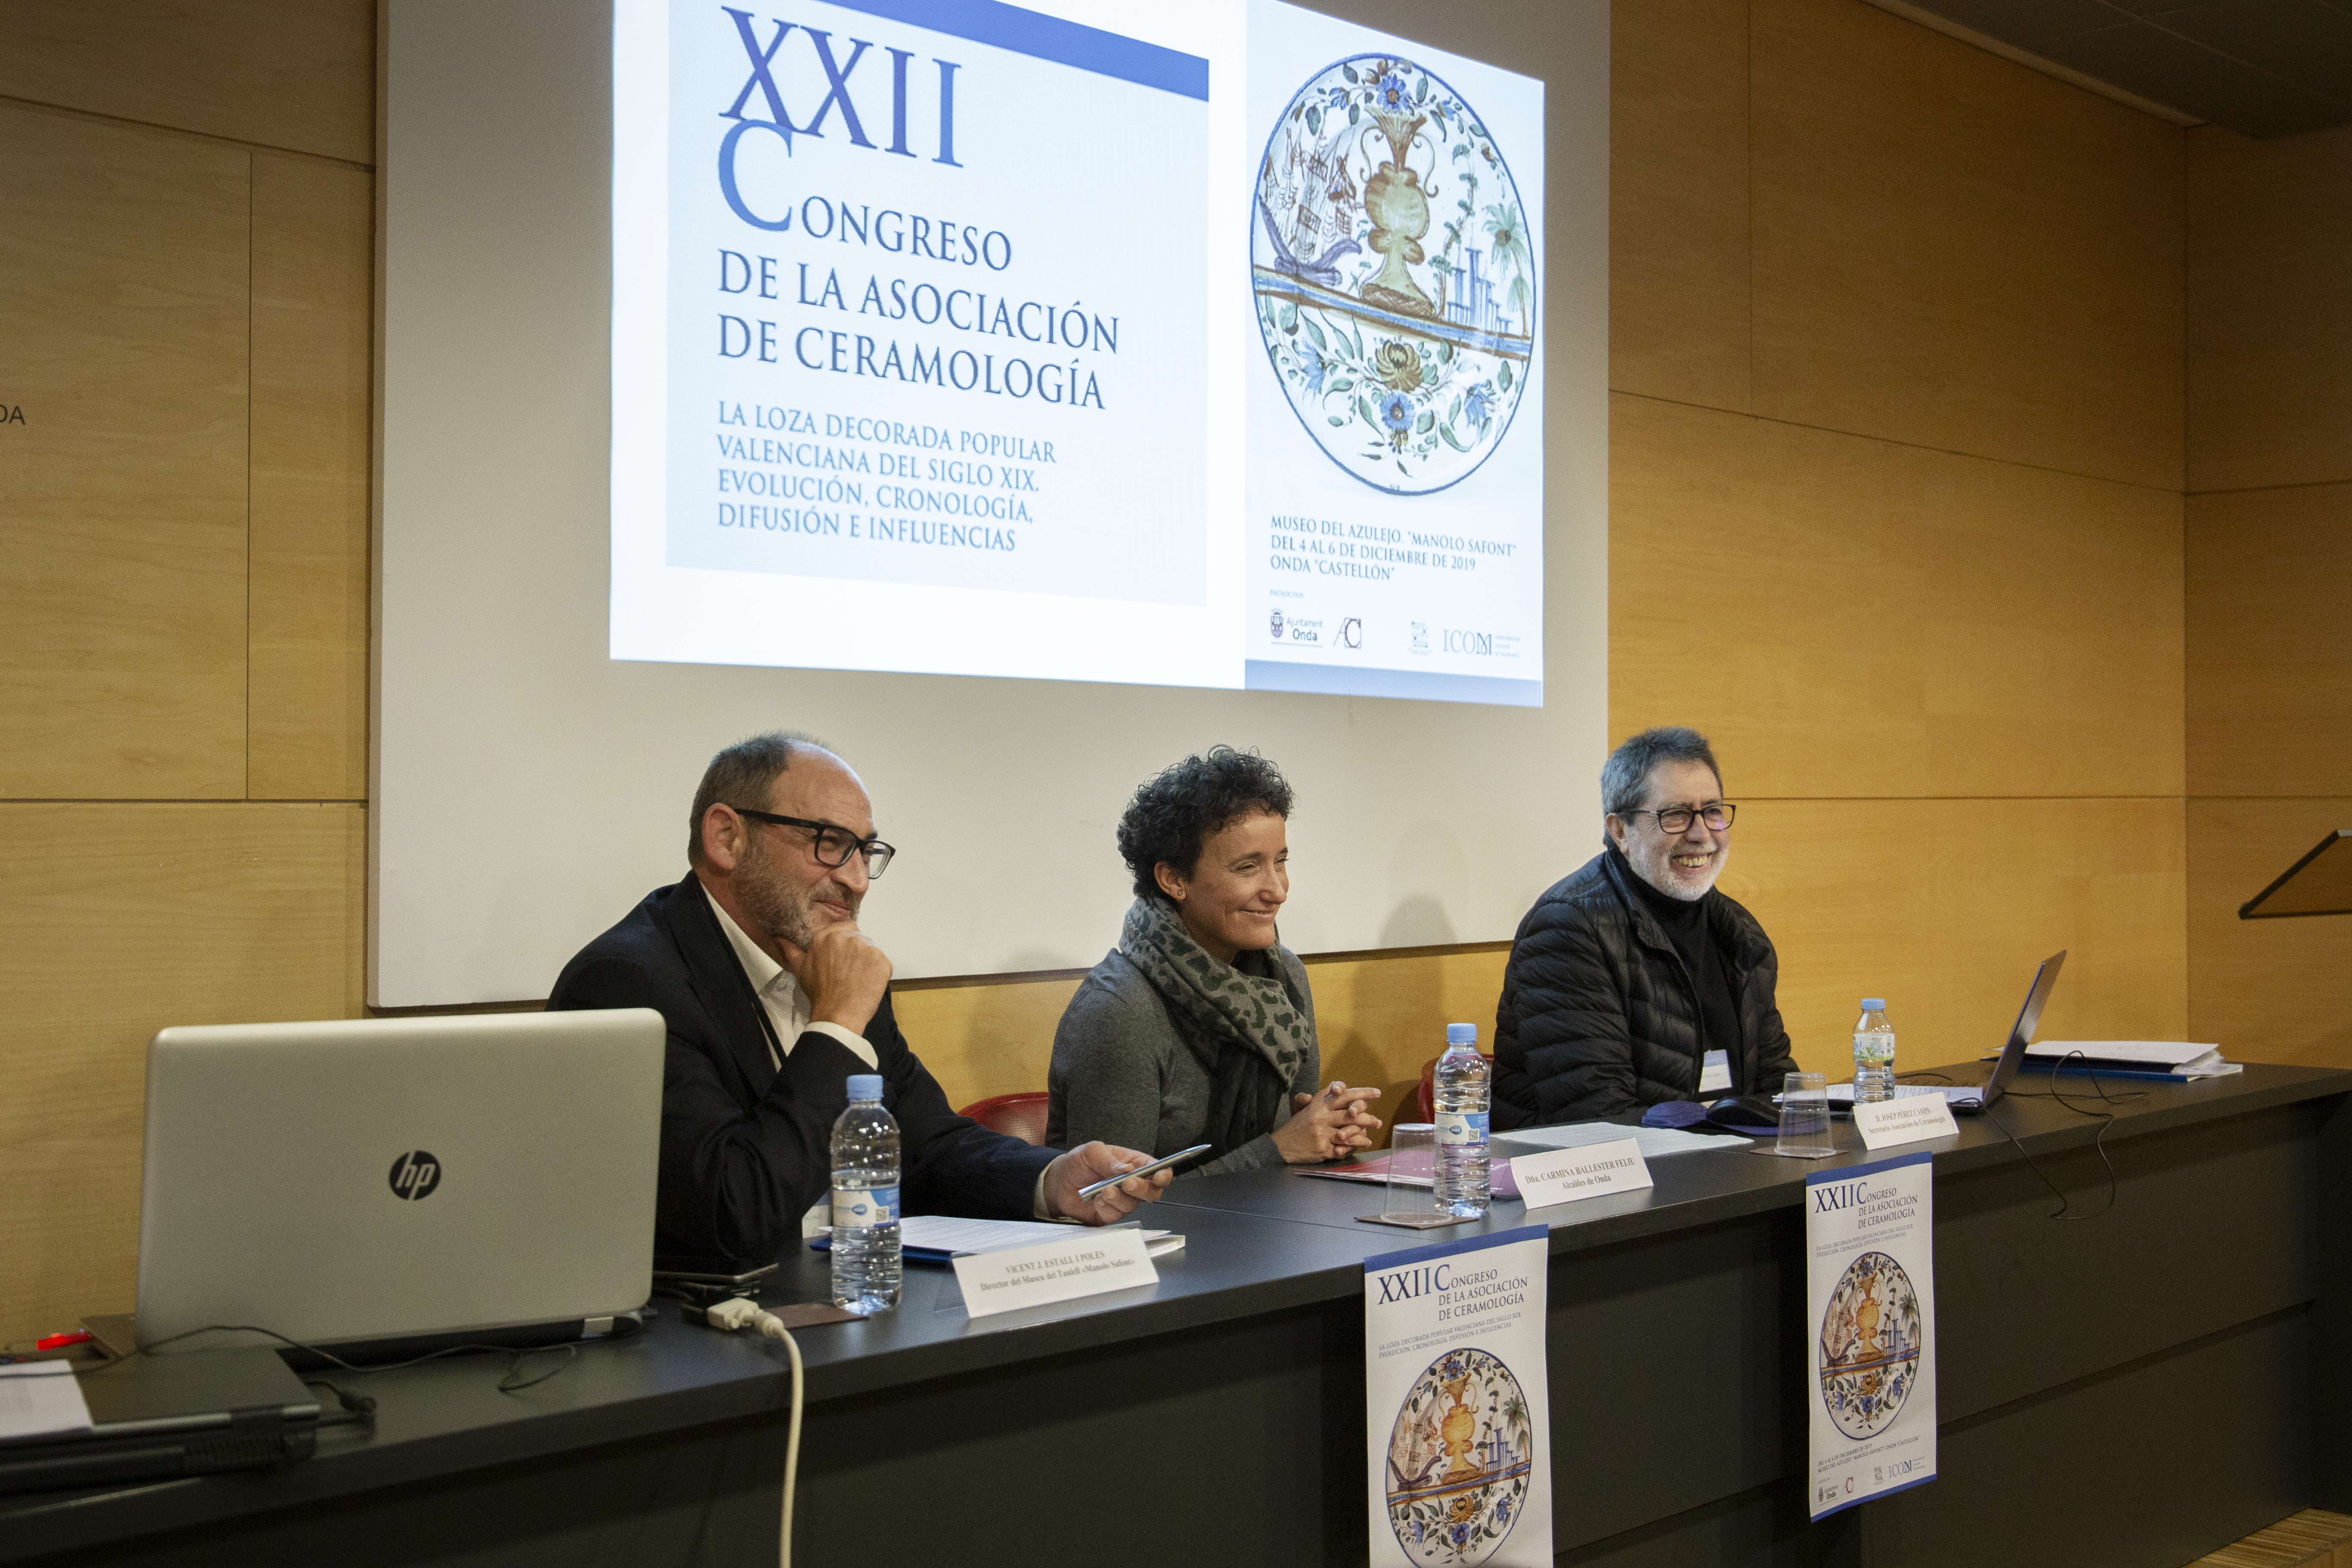 Onda reúne a los mayores expertos en cerámica popular valenciana en el XXII Congreso de Ceramología